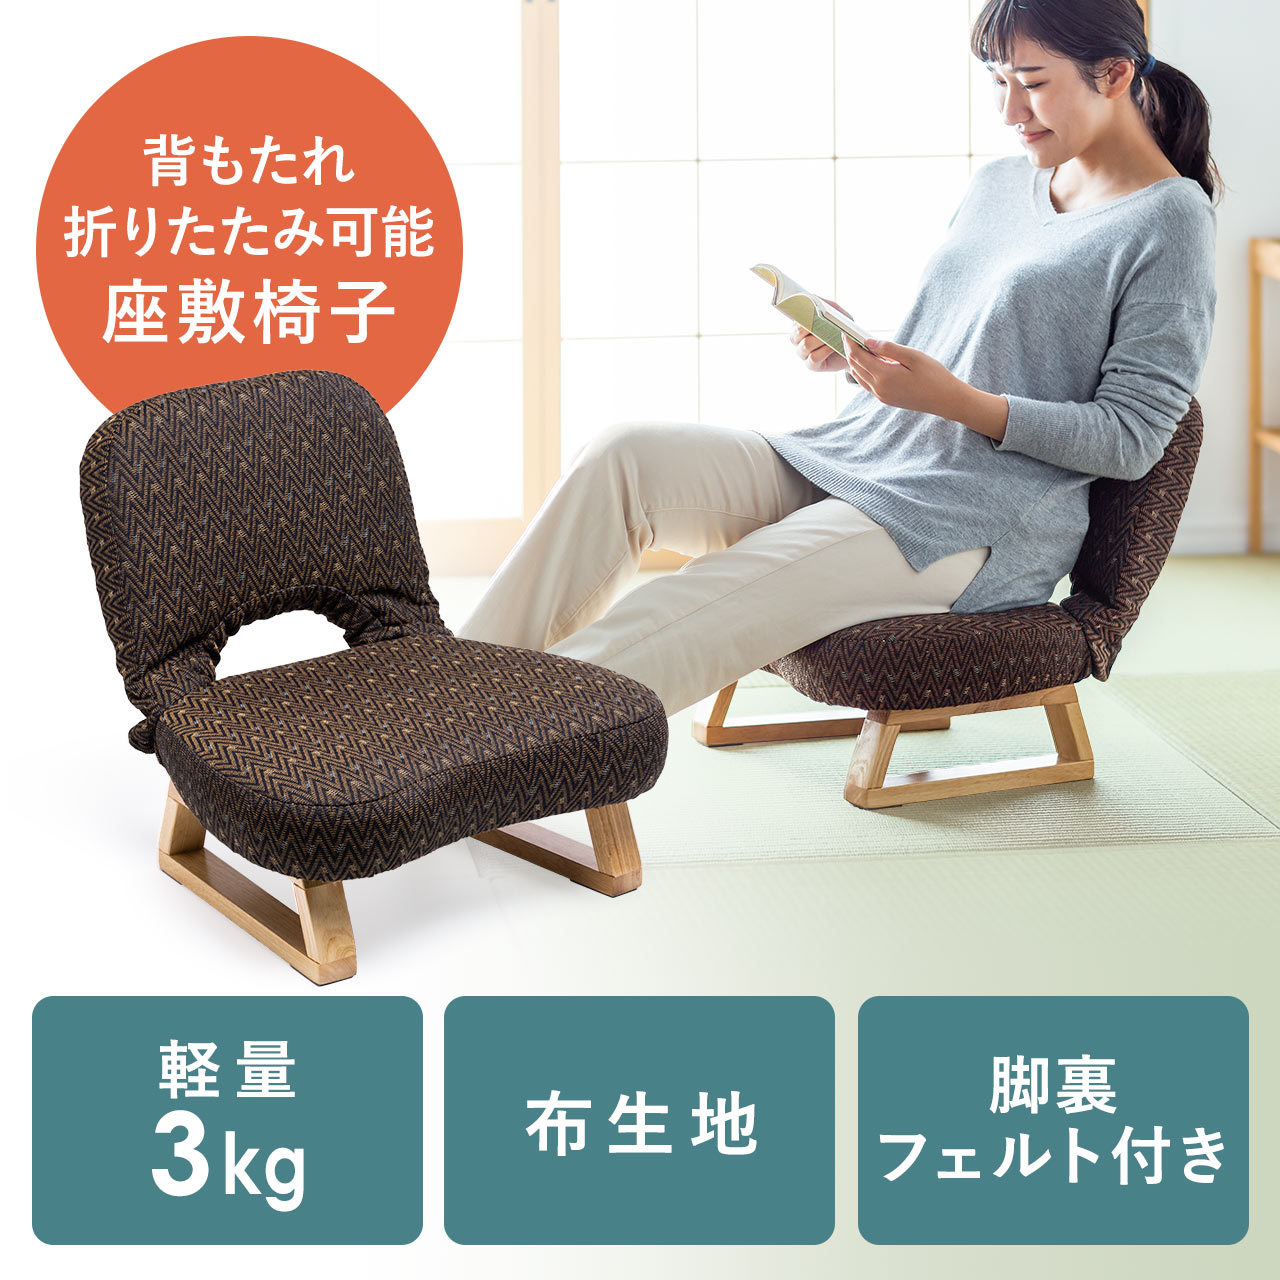 木製座椅子(8脚あり) - チェア